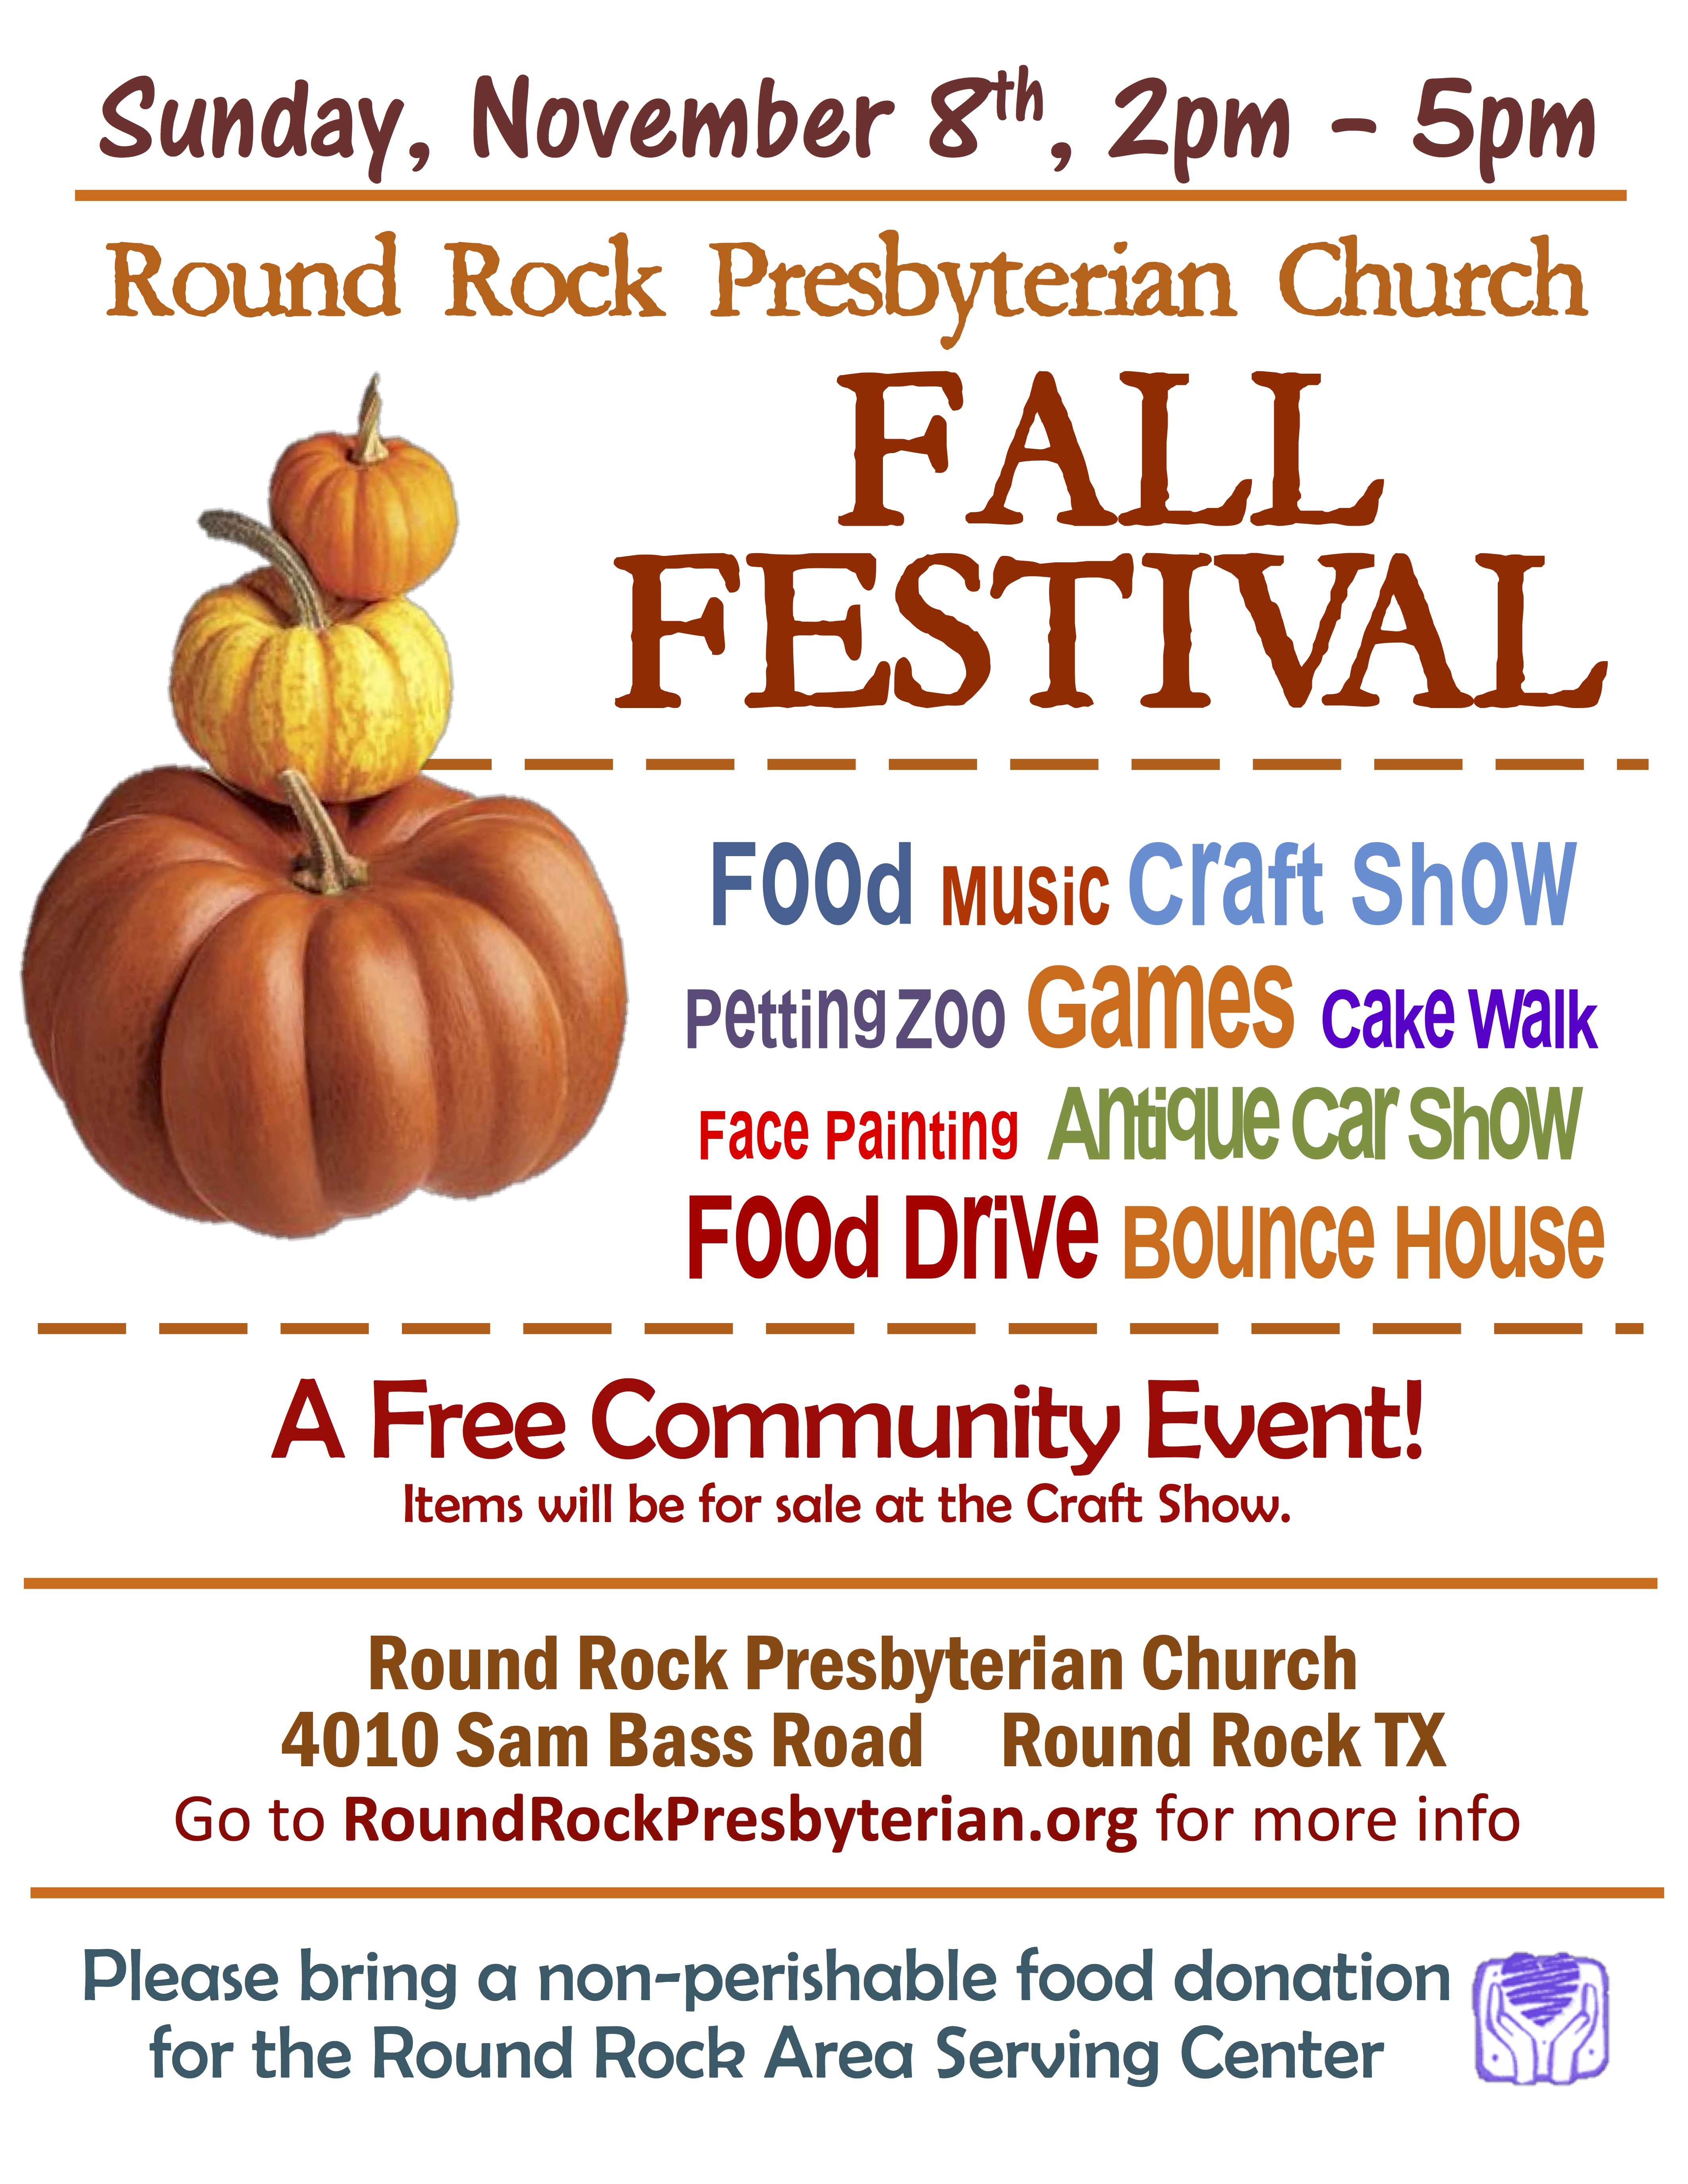 Round Rock Presbyterian Church Fall Festival November 8, 2015 Round